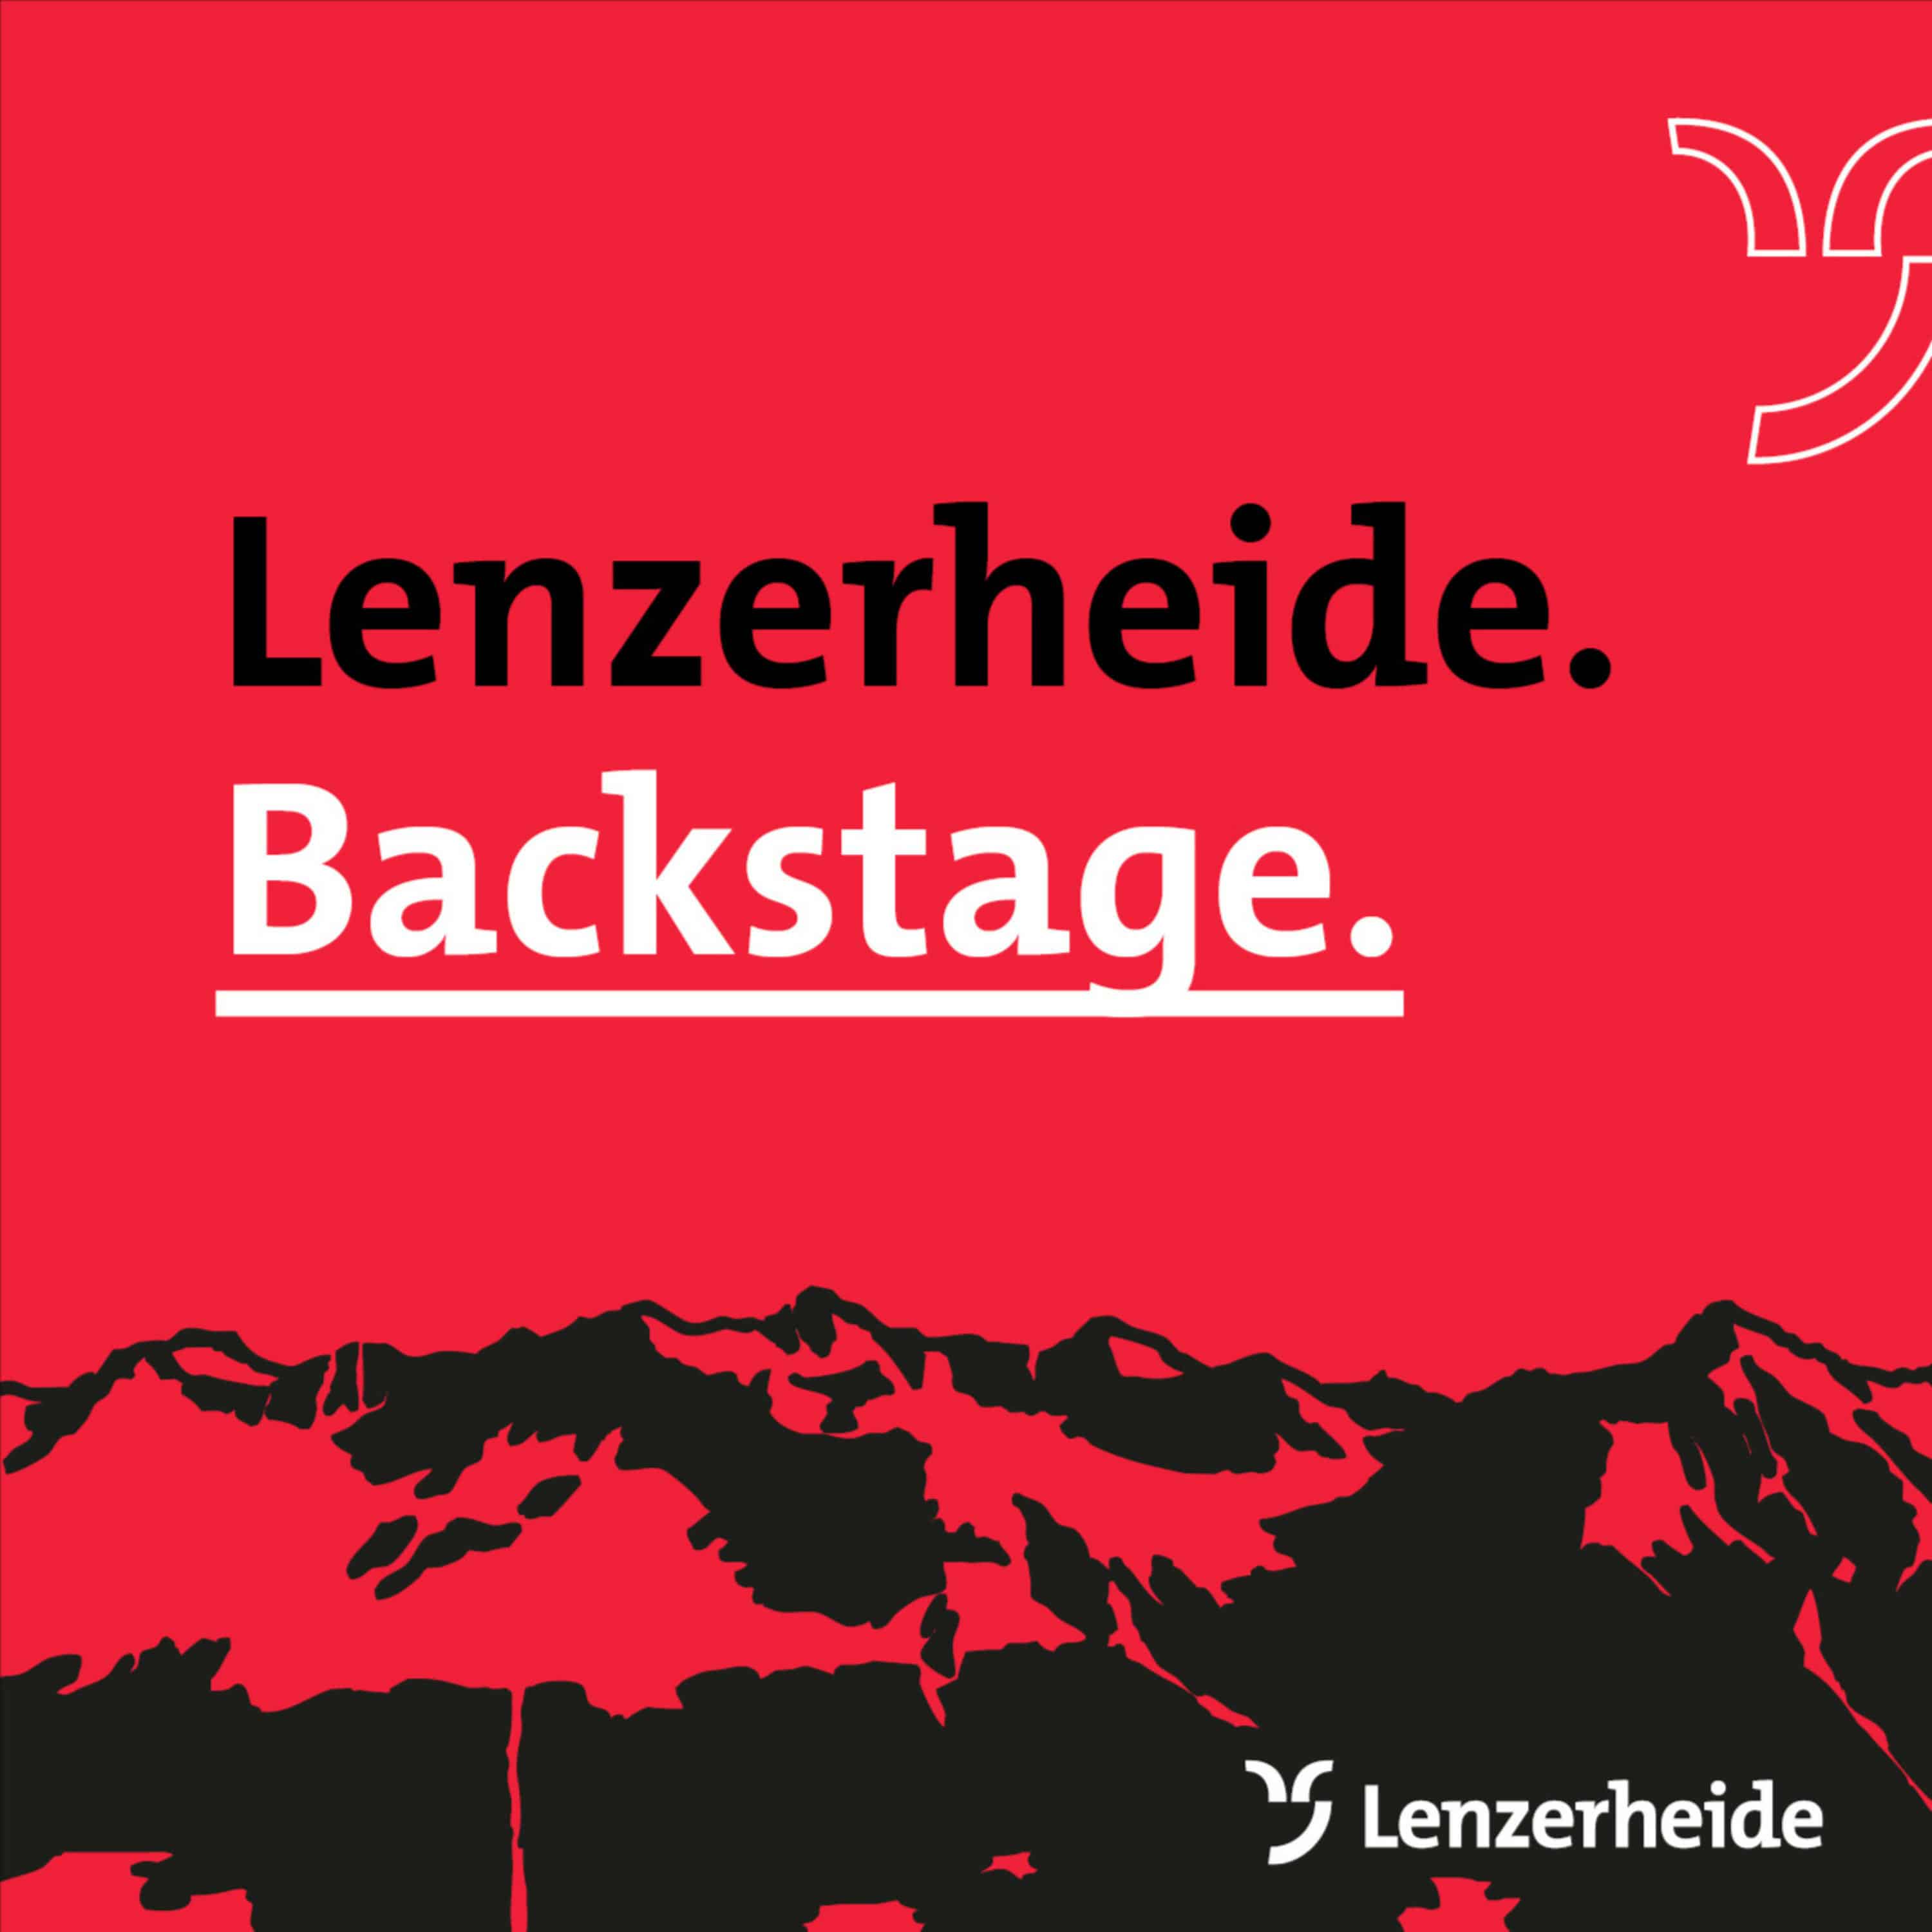 Lenzerheide Backstage - der Destinations- und Tourismuspodcast